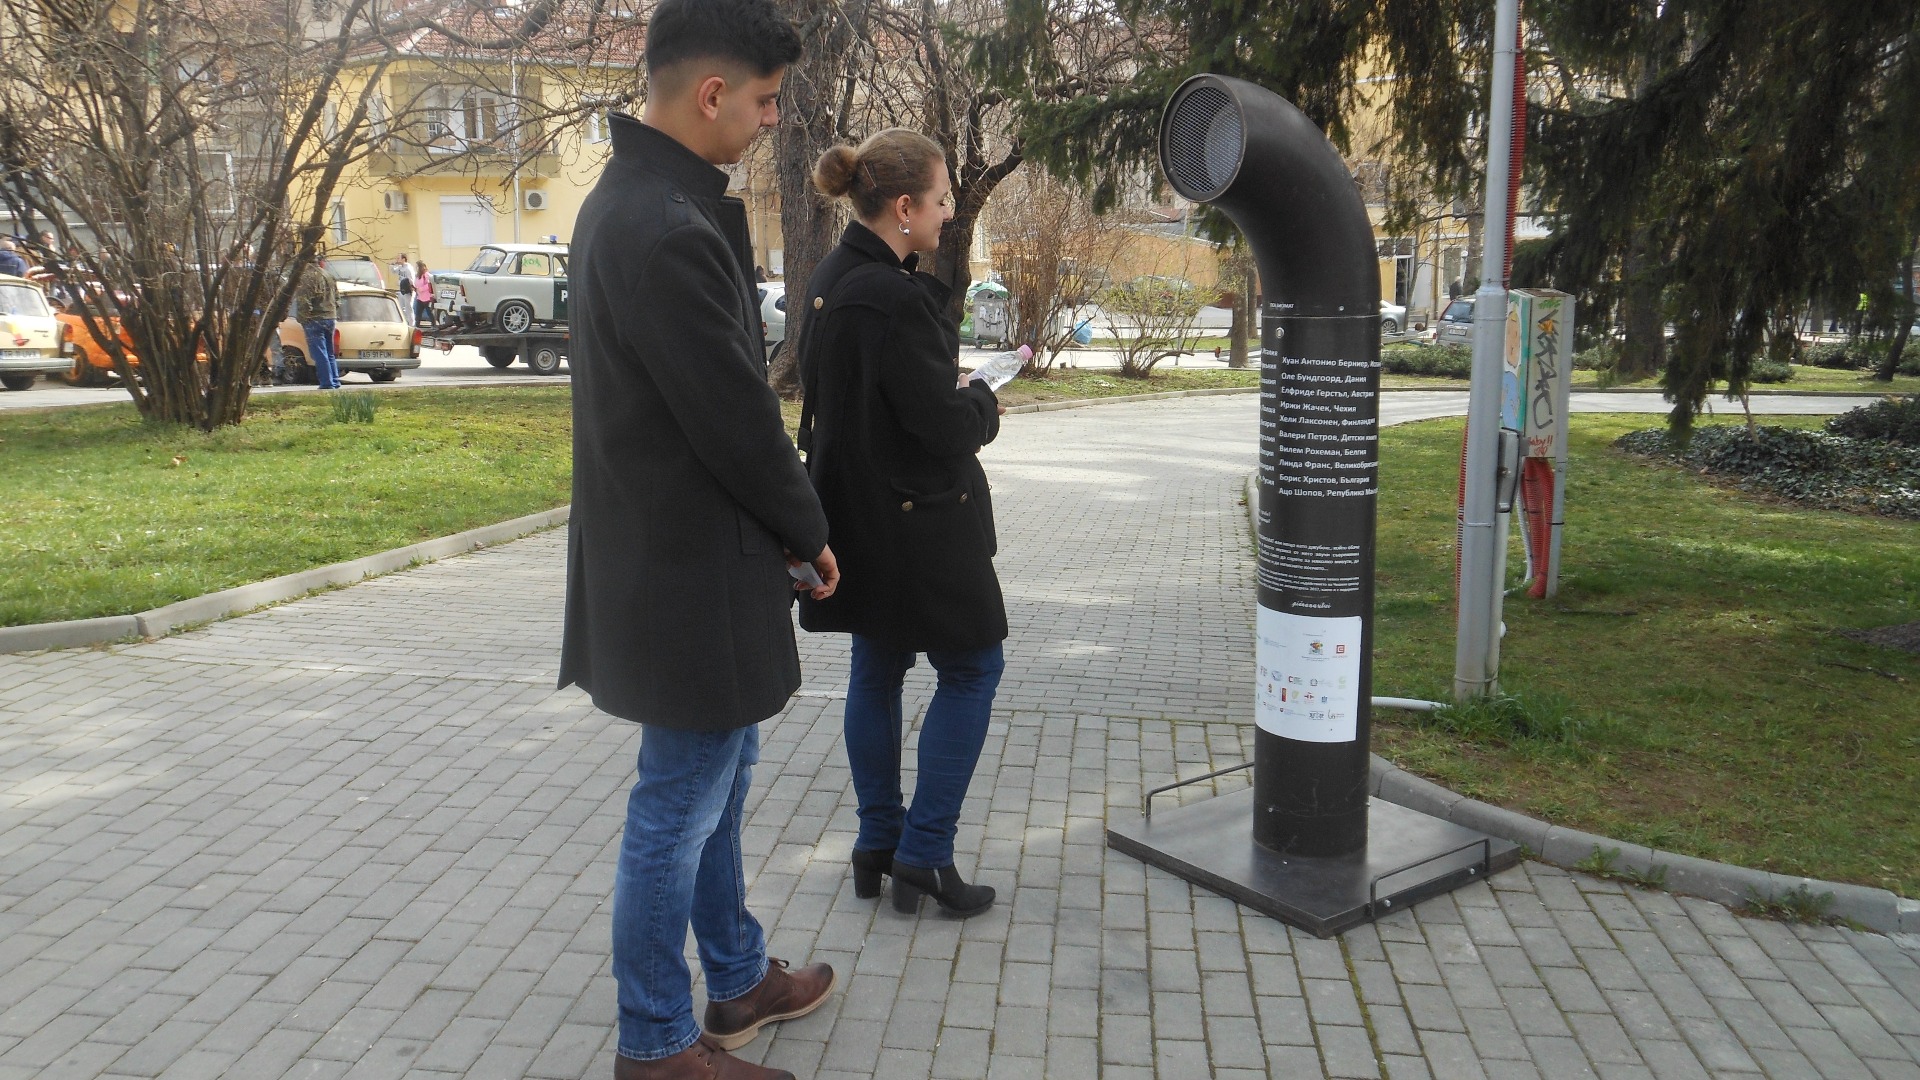 Автомат за слушане на поезия е поставен в парк Марно